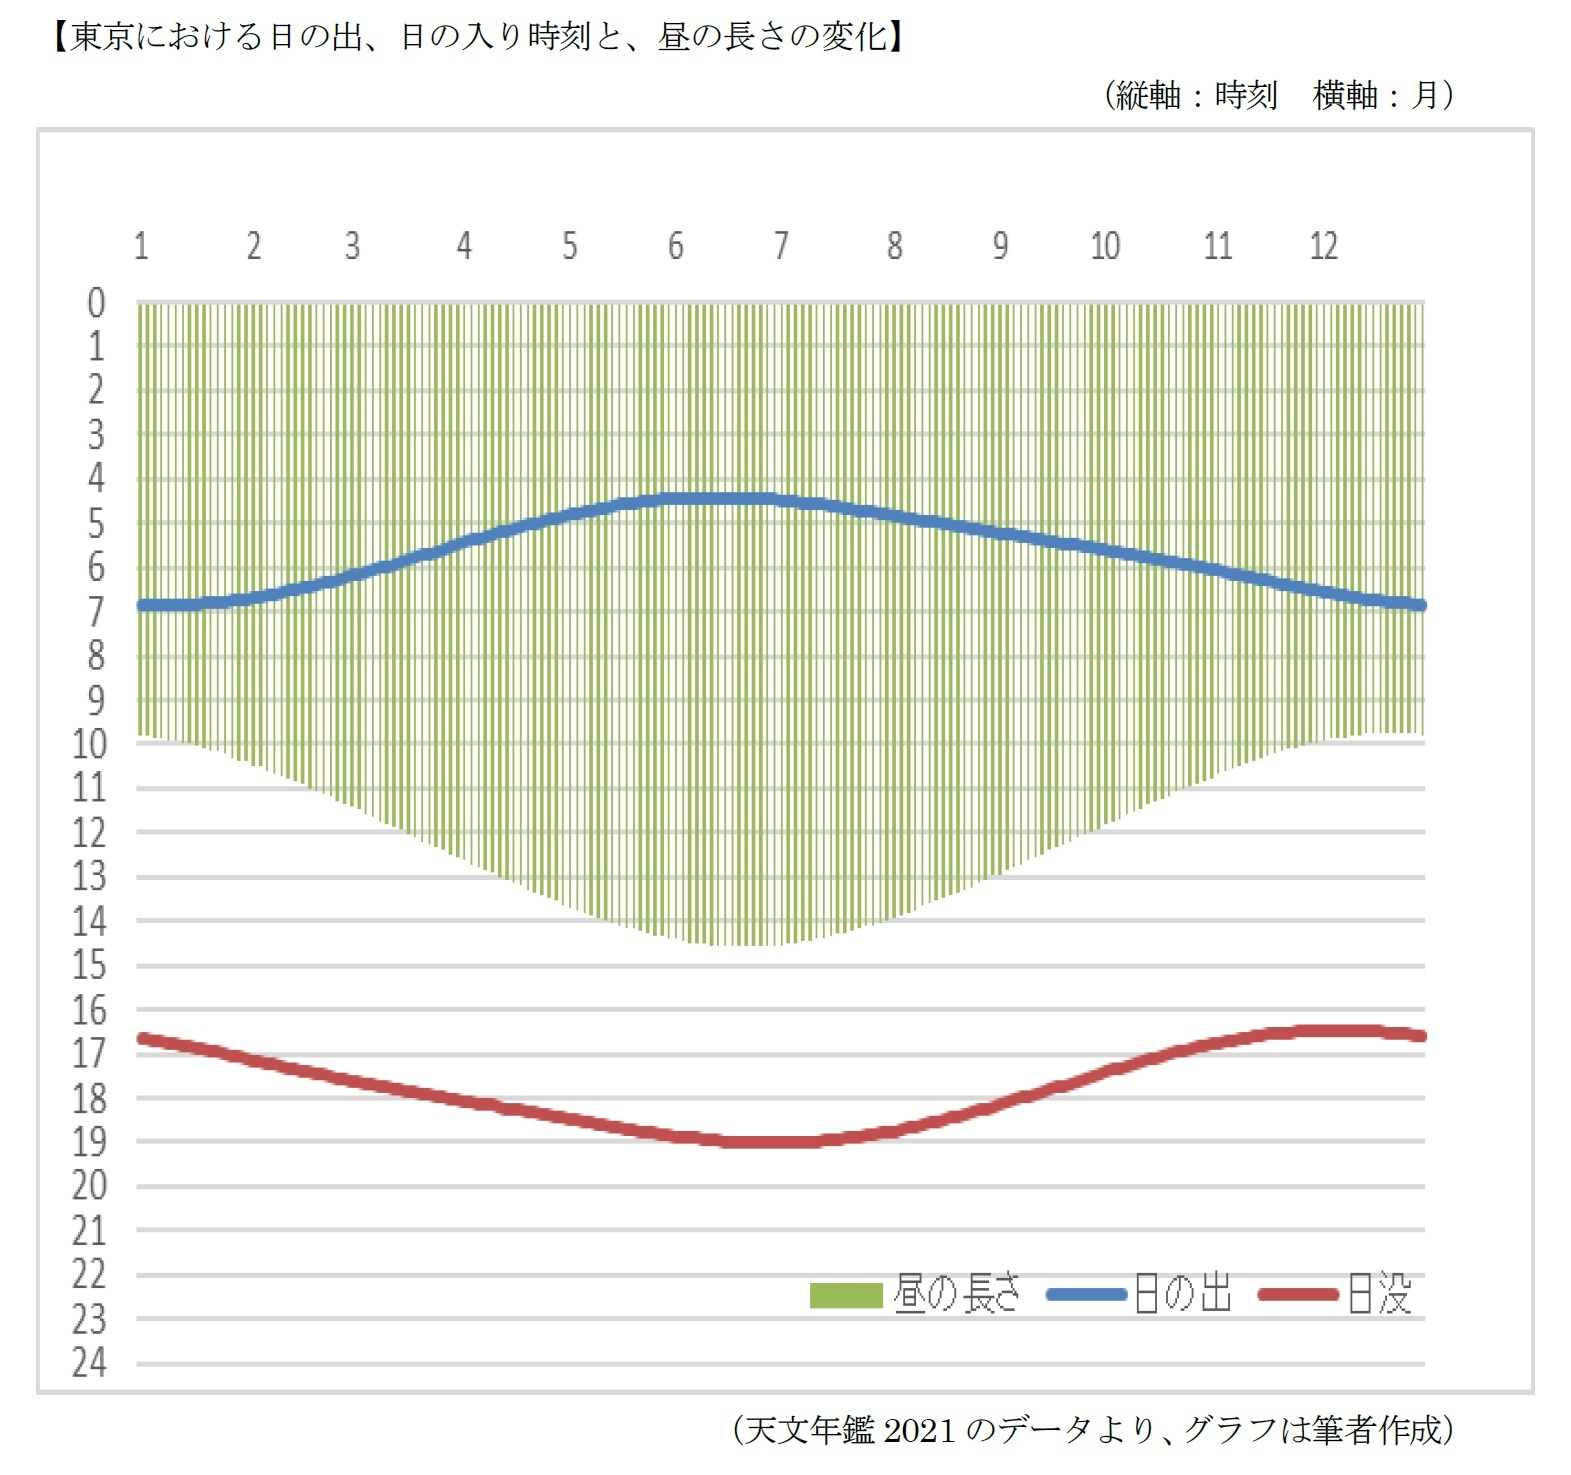 東京における日の出、日の入り時刻と、昼の長さの変化